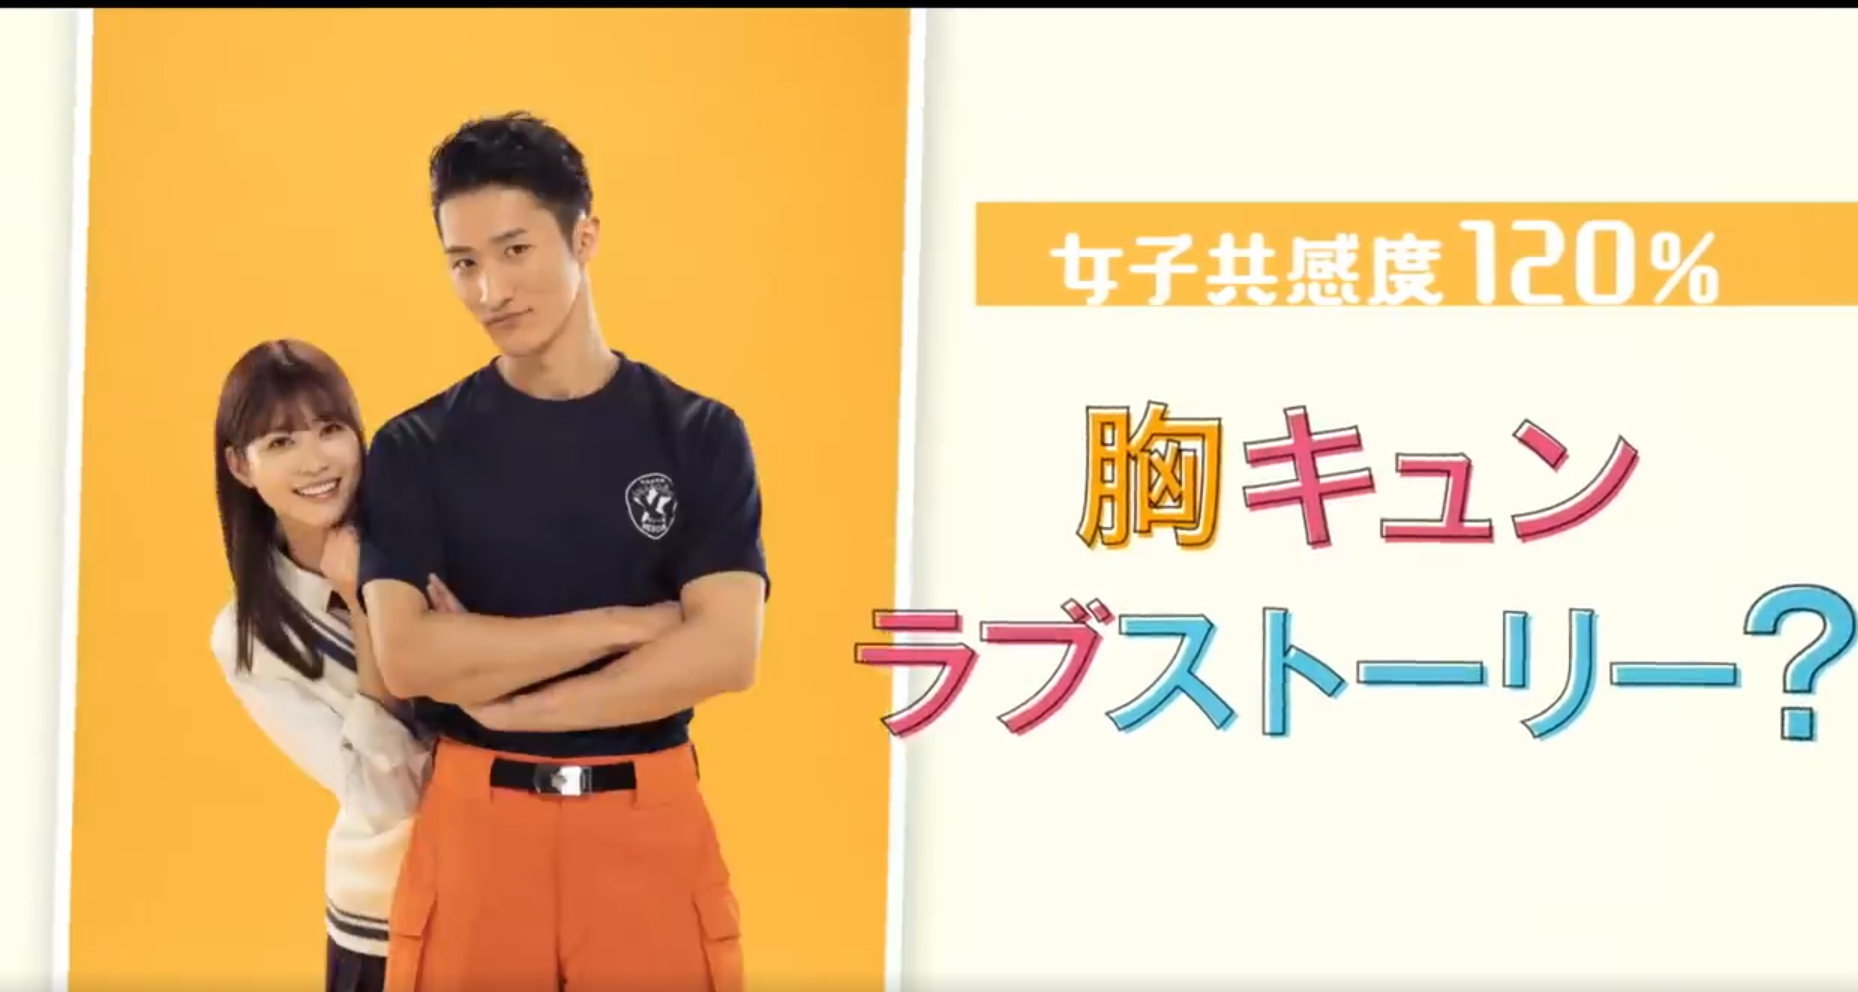 日本漫改爱情电影《萌系男友是燃燃的橘色》将在7月8日上映